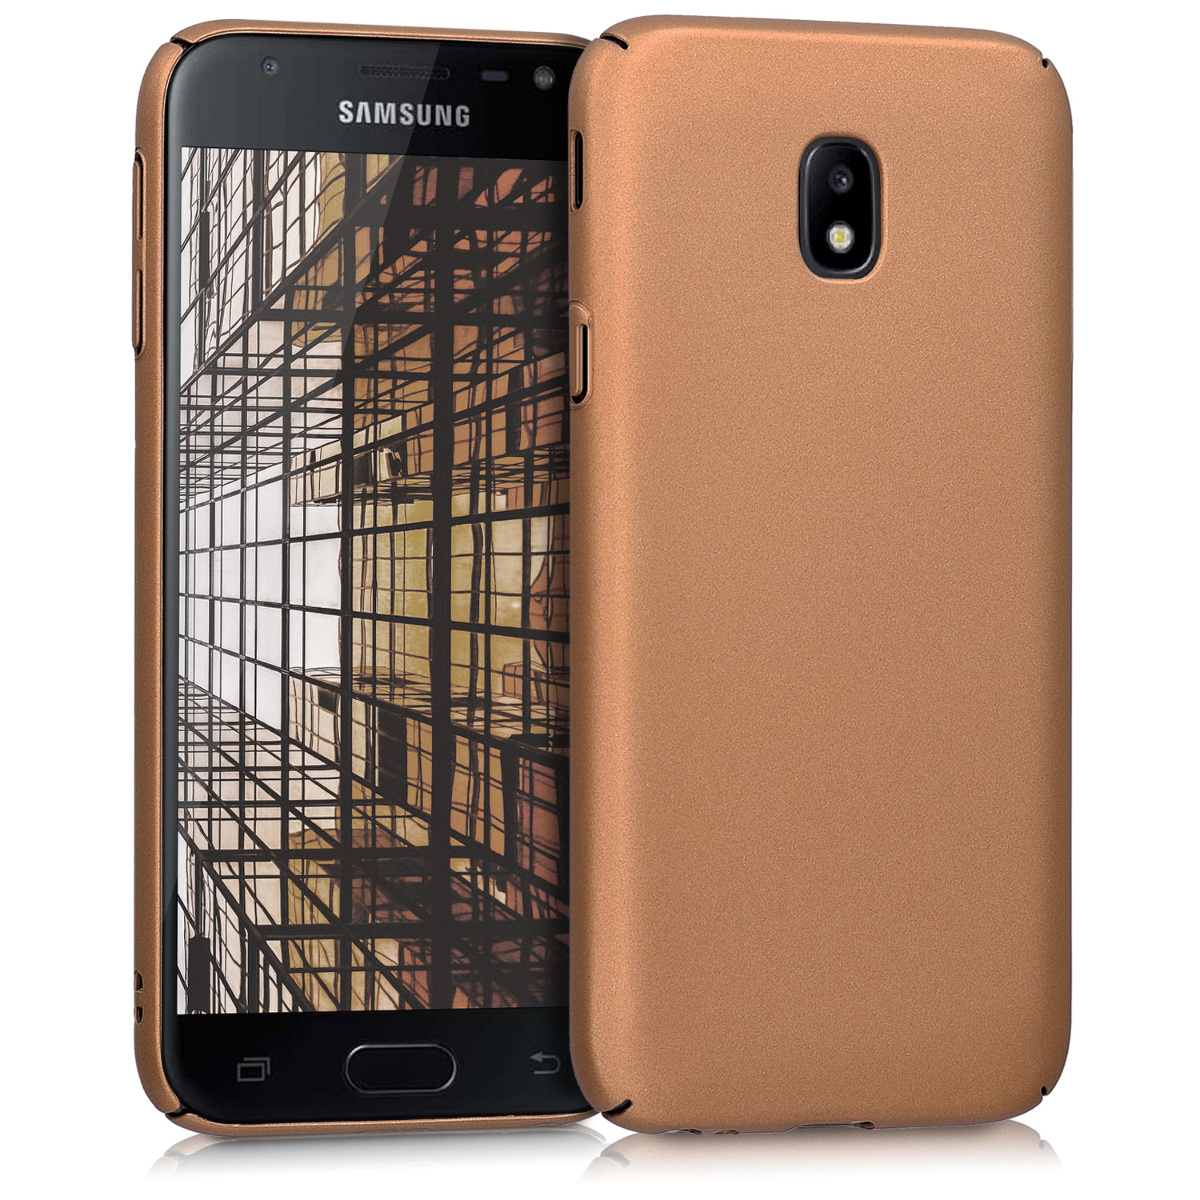 Kvalitní plastové pouzdro pro Samsung J3 (2017) DUOS - metalické Copper